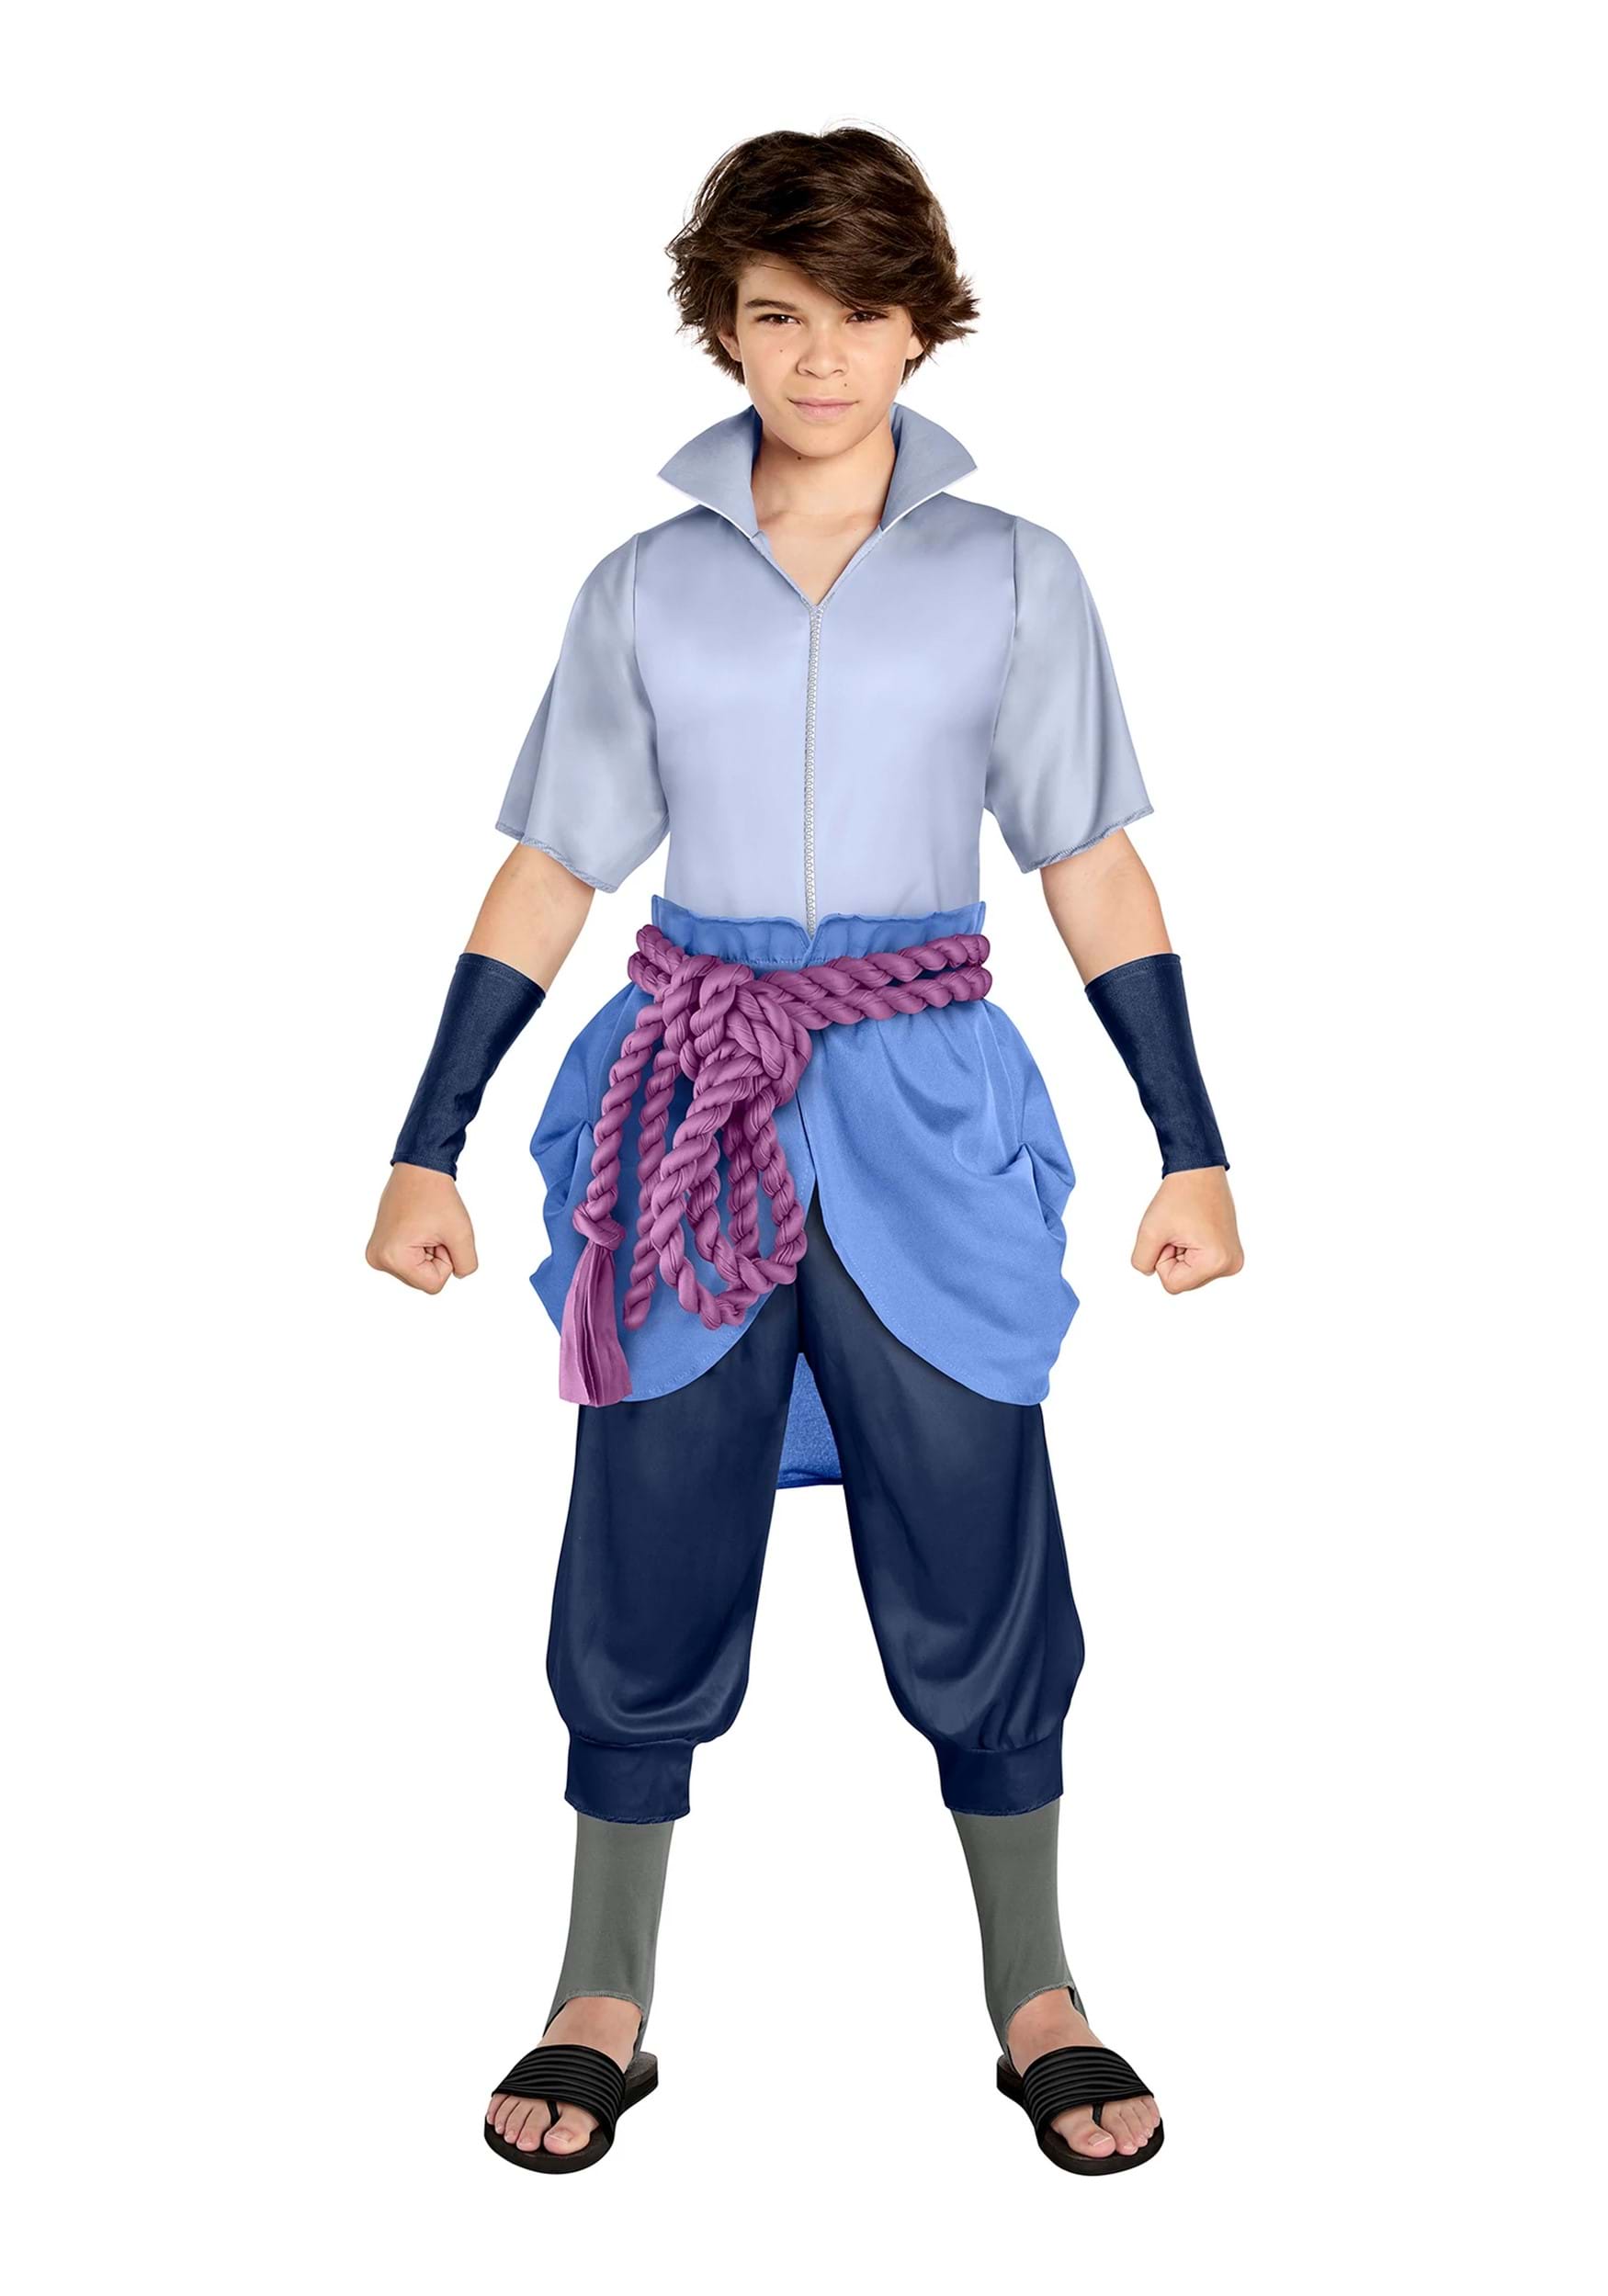 https://images.fun.com/products/81900/1-1/naruto-shippuden-sasuke-uchiha-kids-costume.jpg